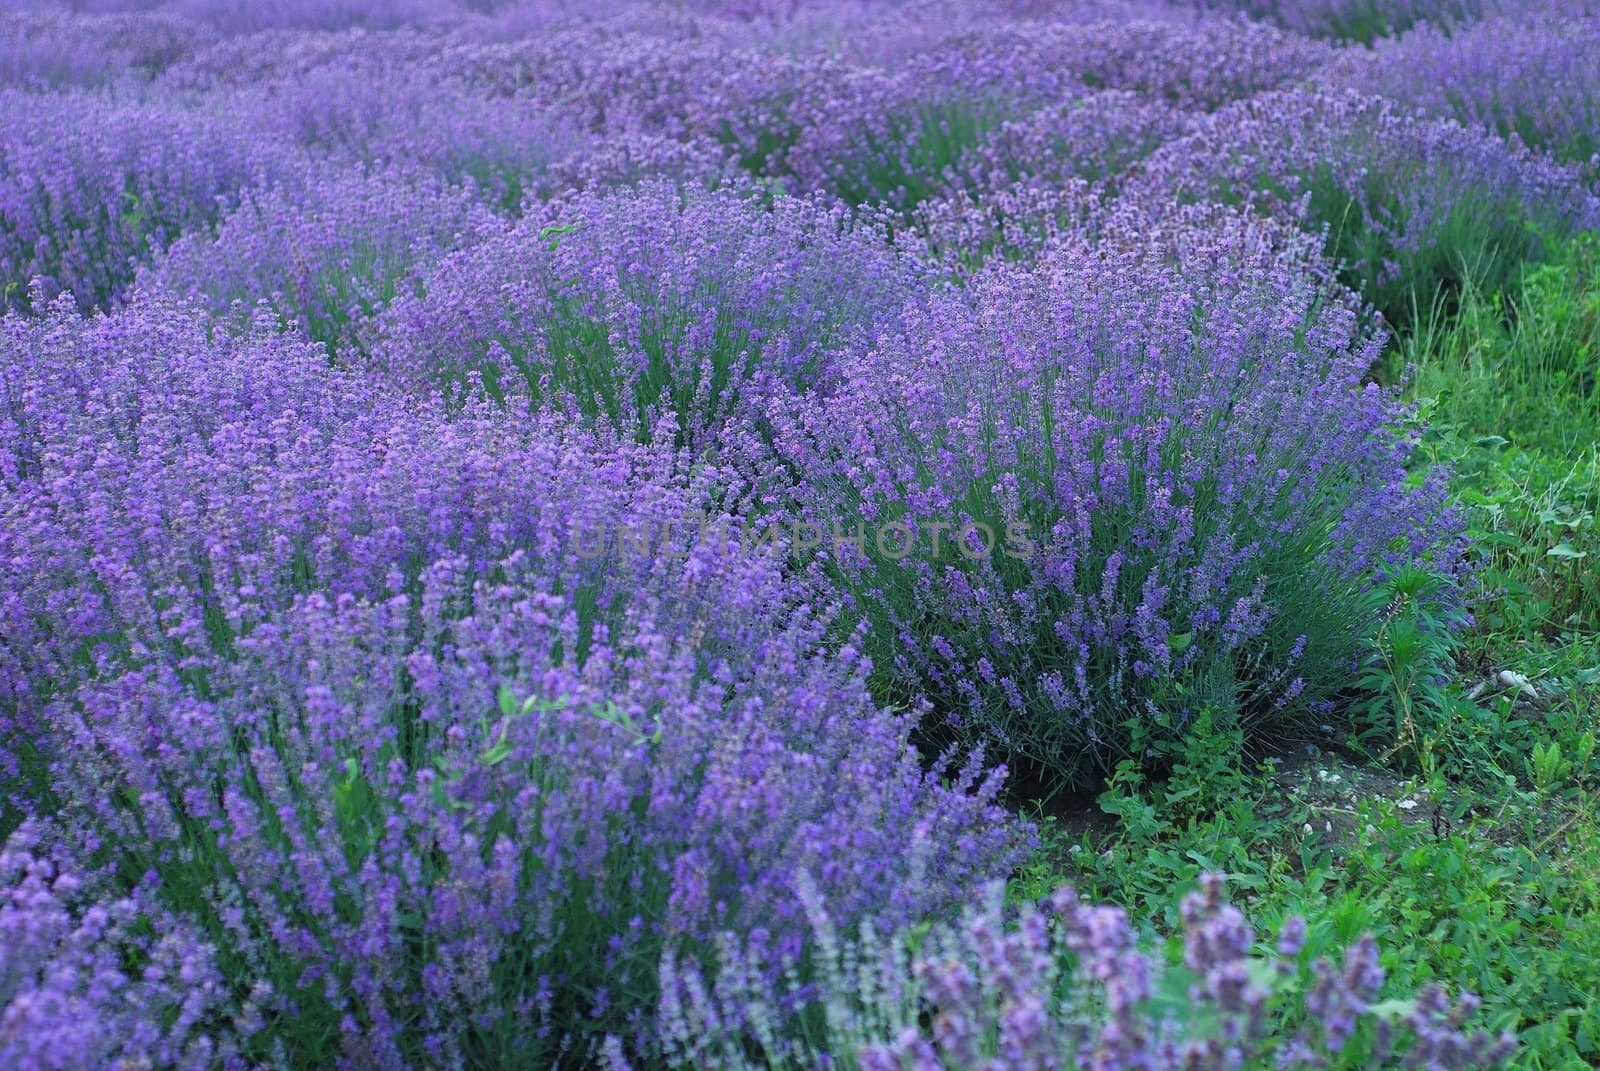  Aromatherapy landscape. Background of  violet lavender field